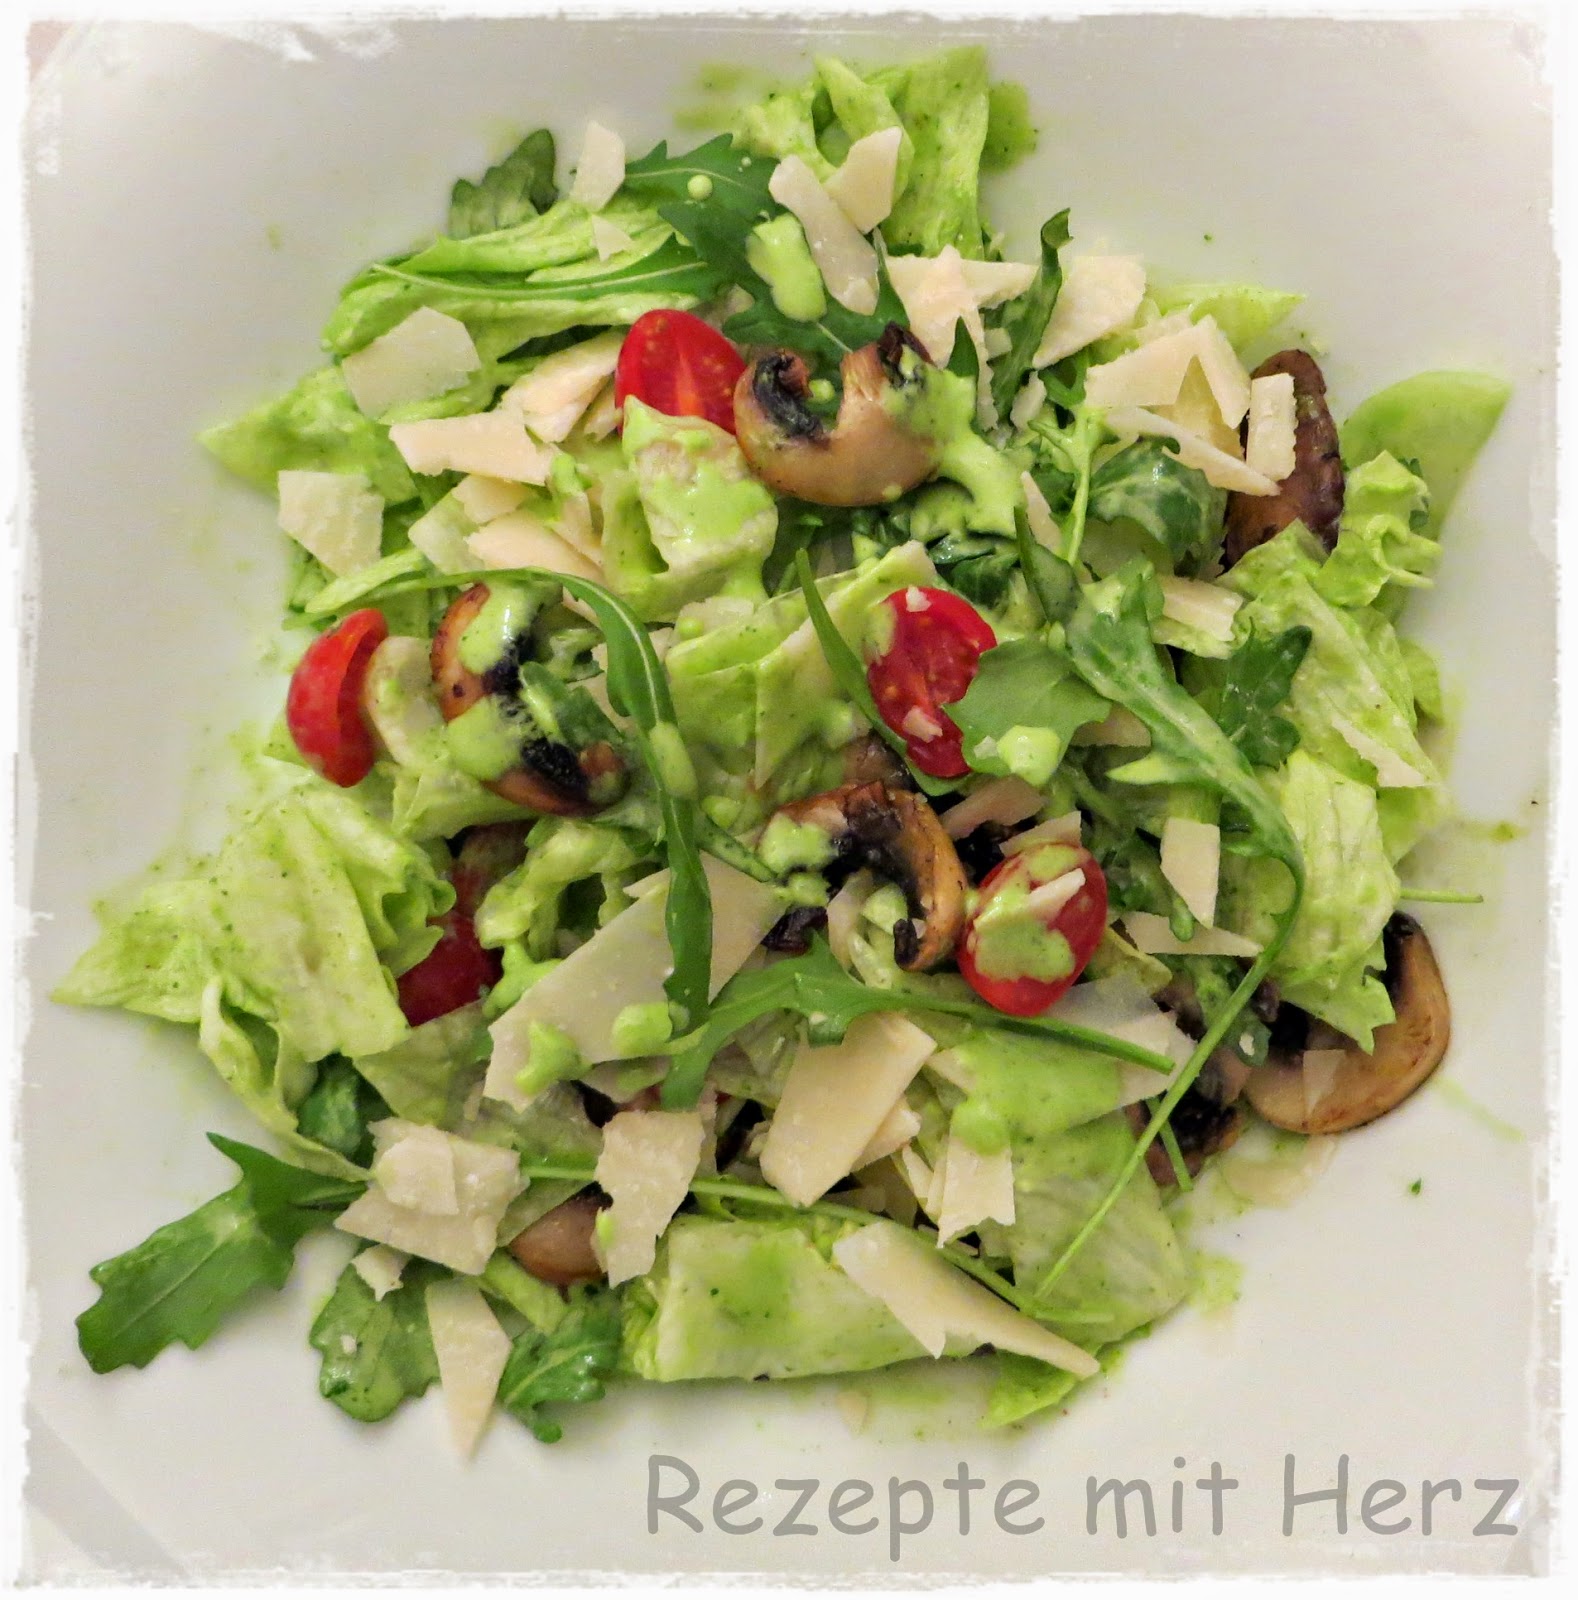 Rezepte mit Herz: Vapiano Salat mit Rucola Dressing